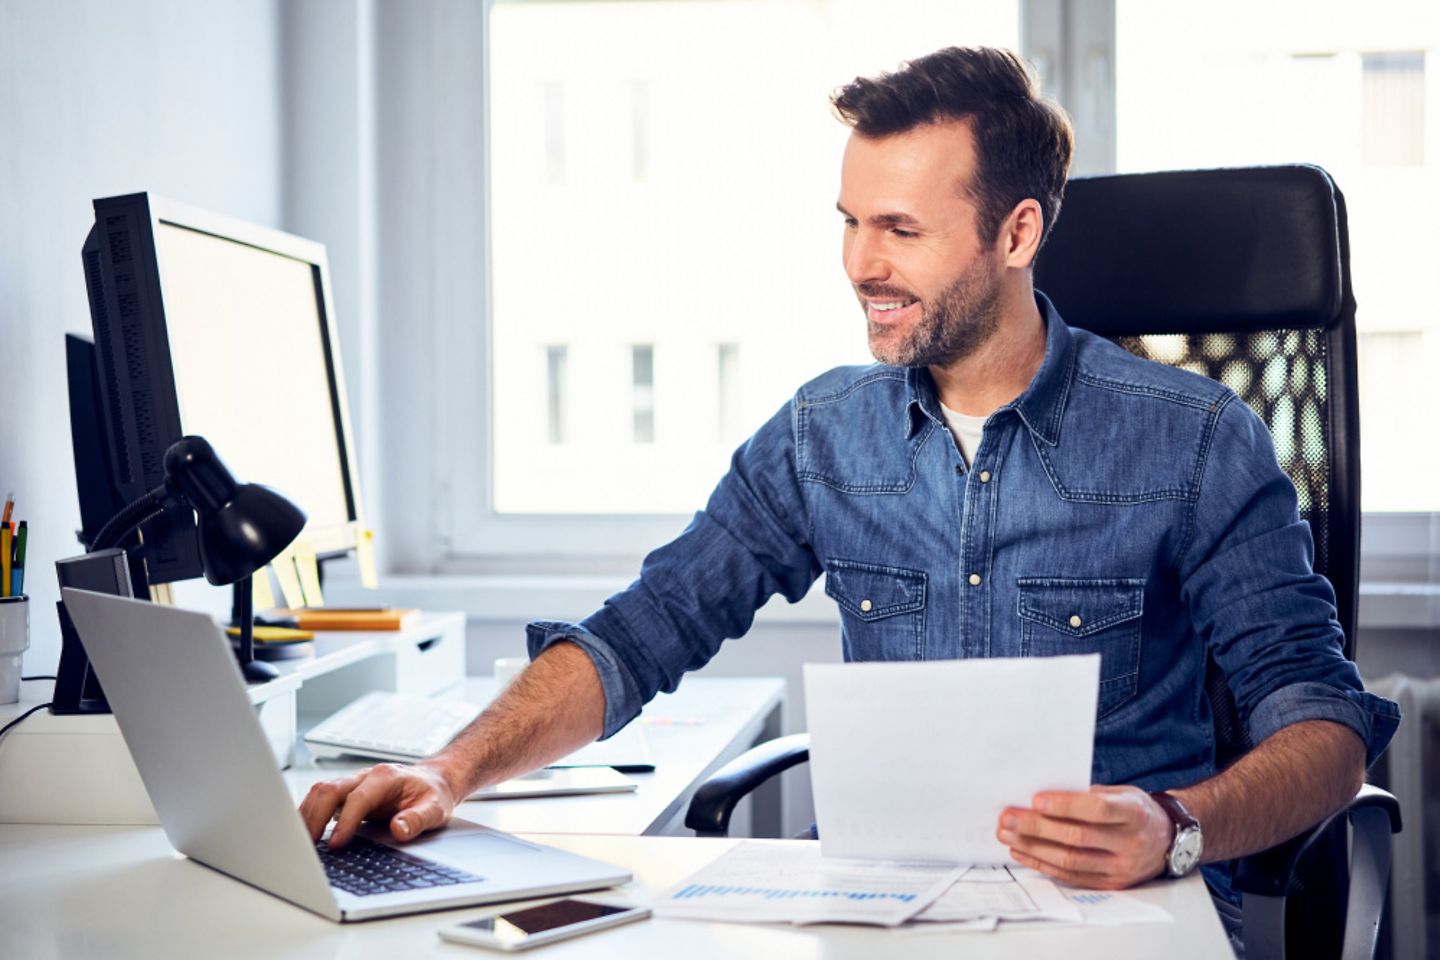  Hombre sonriente sosteniendo un documento y usando un laptop